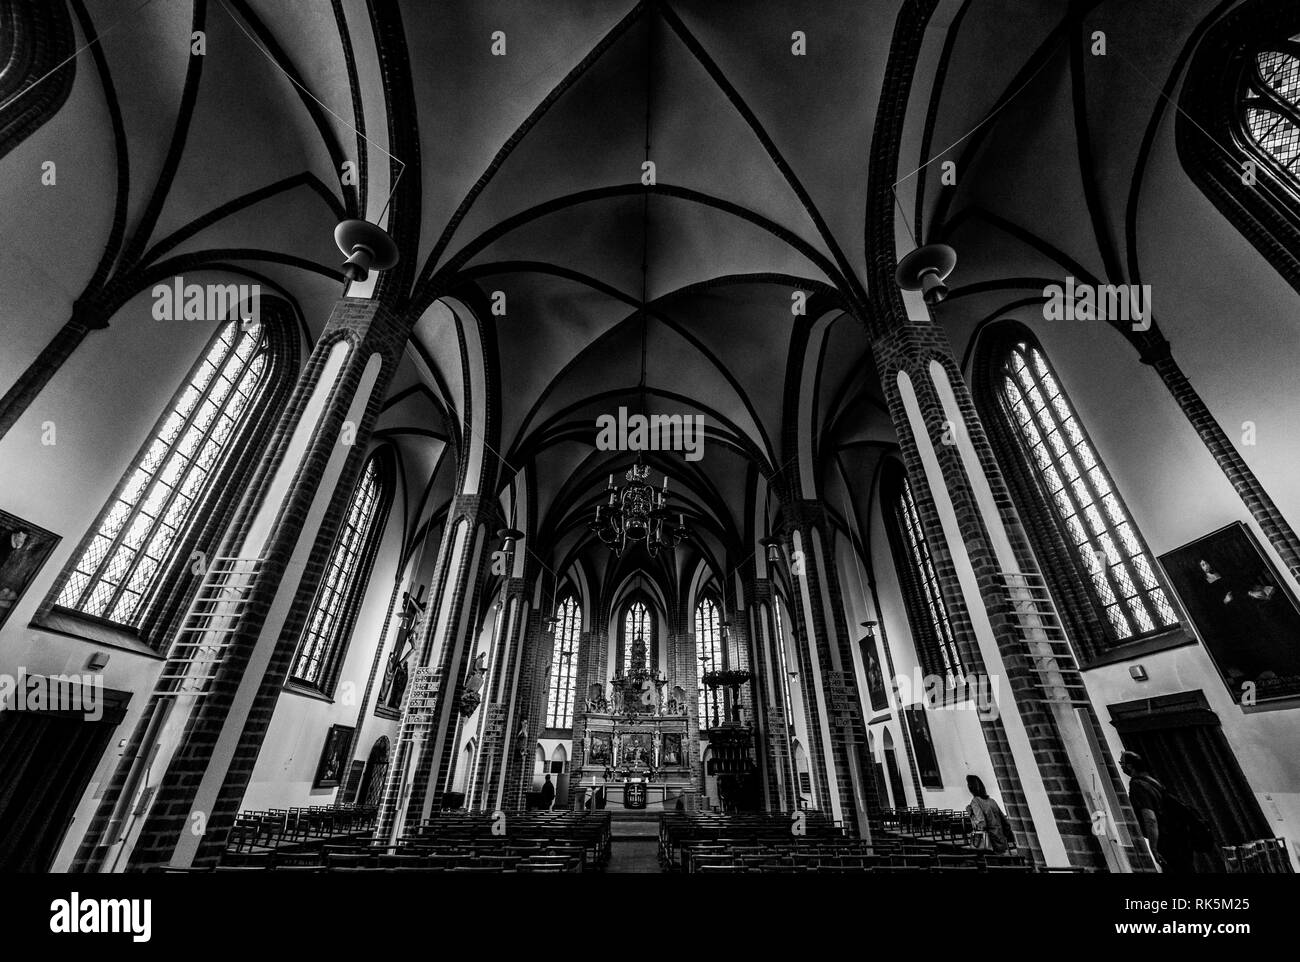 BERLIN - 09 septembre 2018 : Intérieur de l'église de Saint-Nicolas dans le centre historique de Spandau. Noir et blanc. Banque D'Images